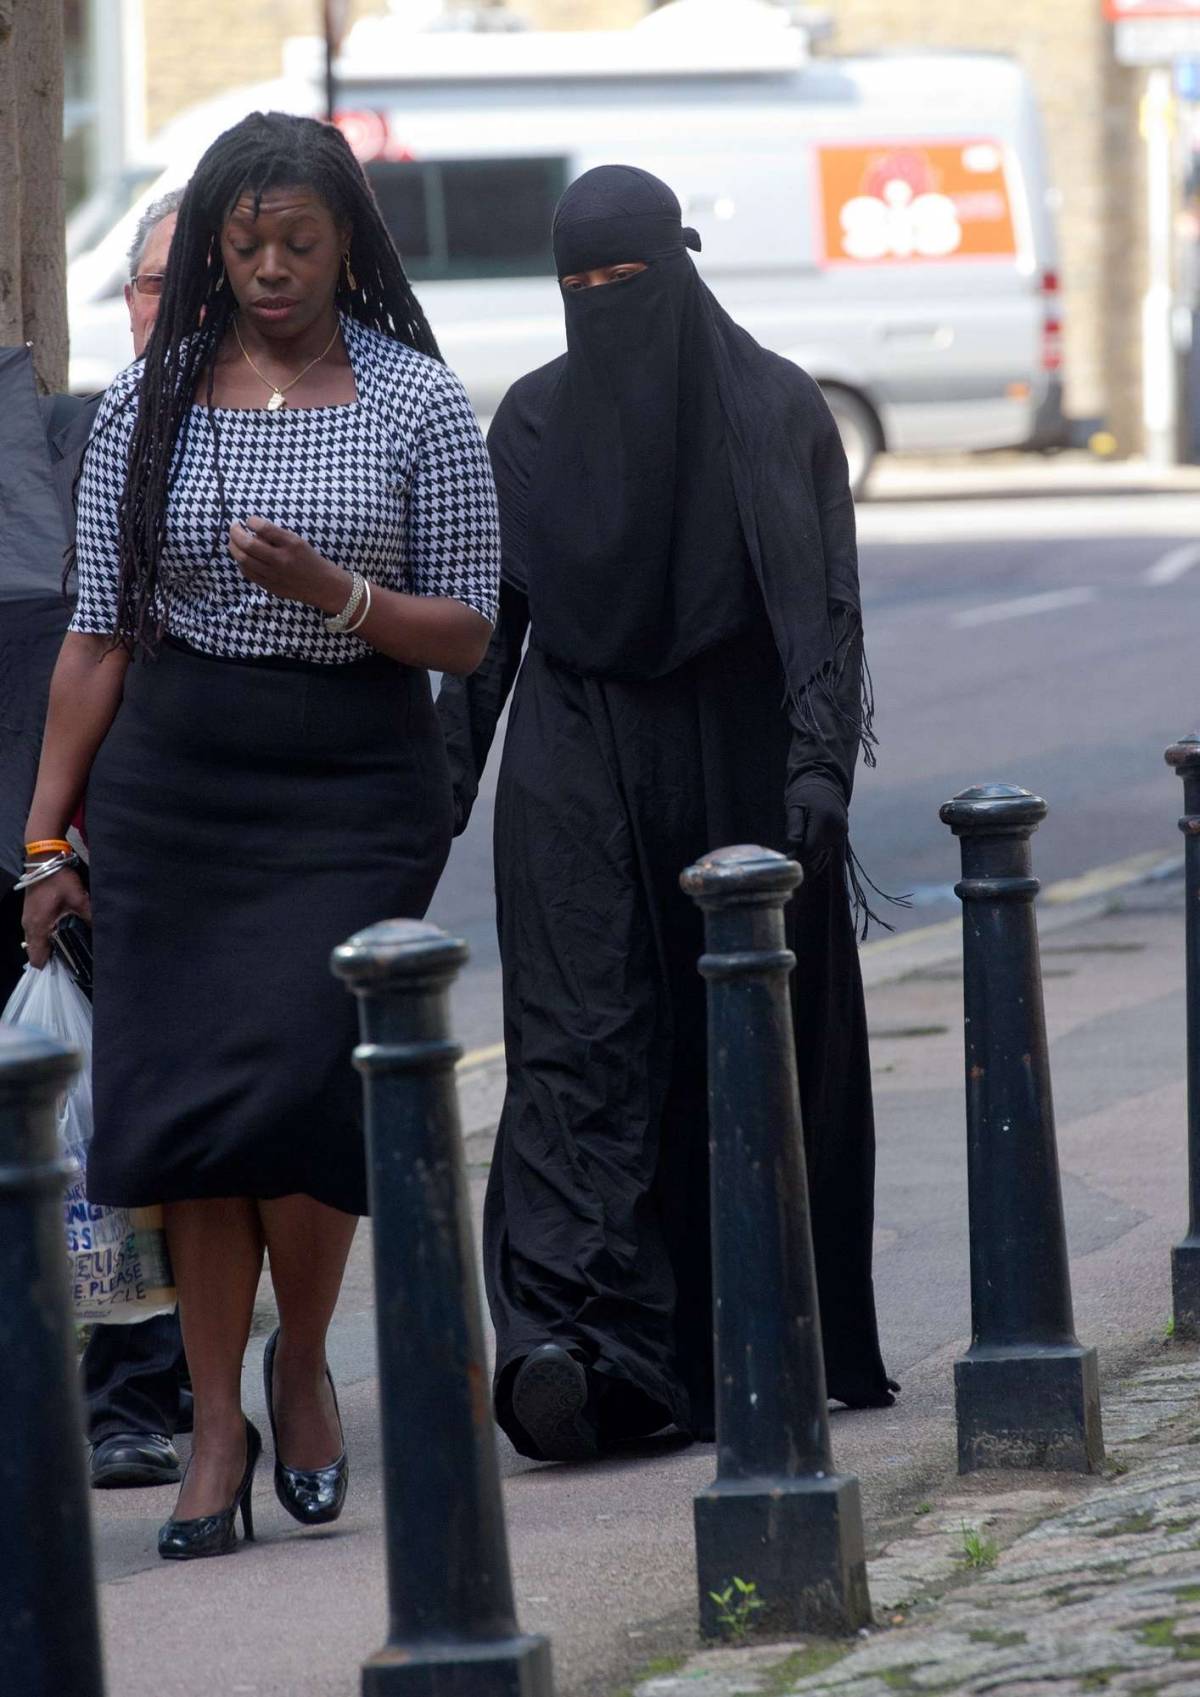 Londra, un giudice vieta il velo islamico in aula